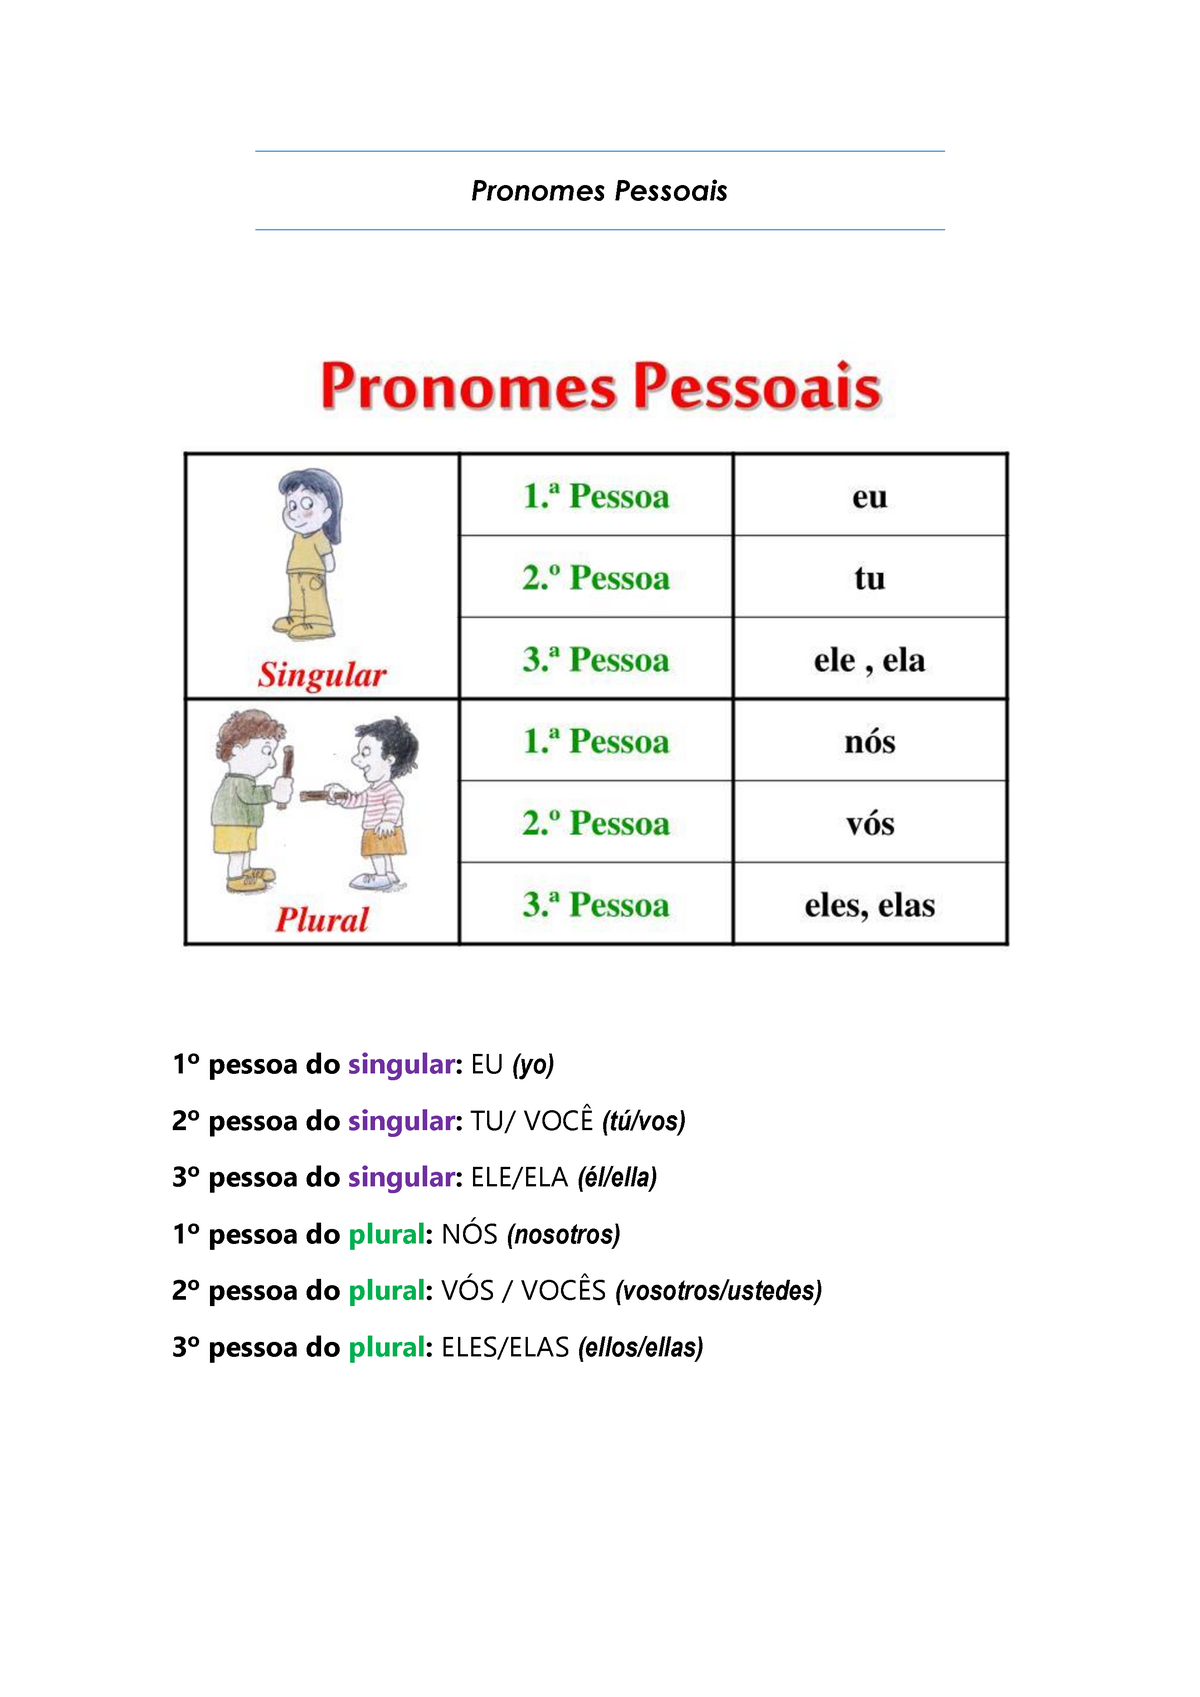 Pronomes Pessoais Pronombres Personales Portugues I Pronomes